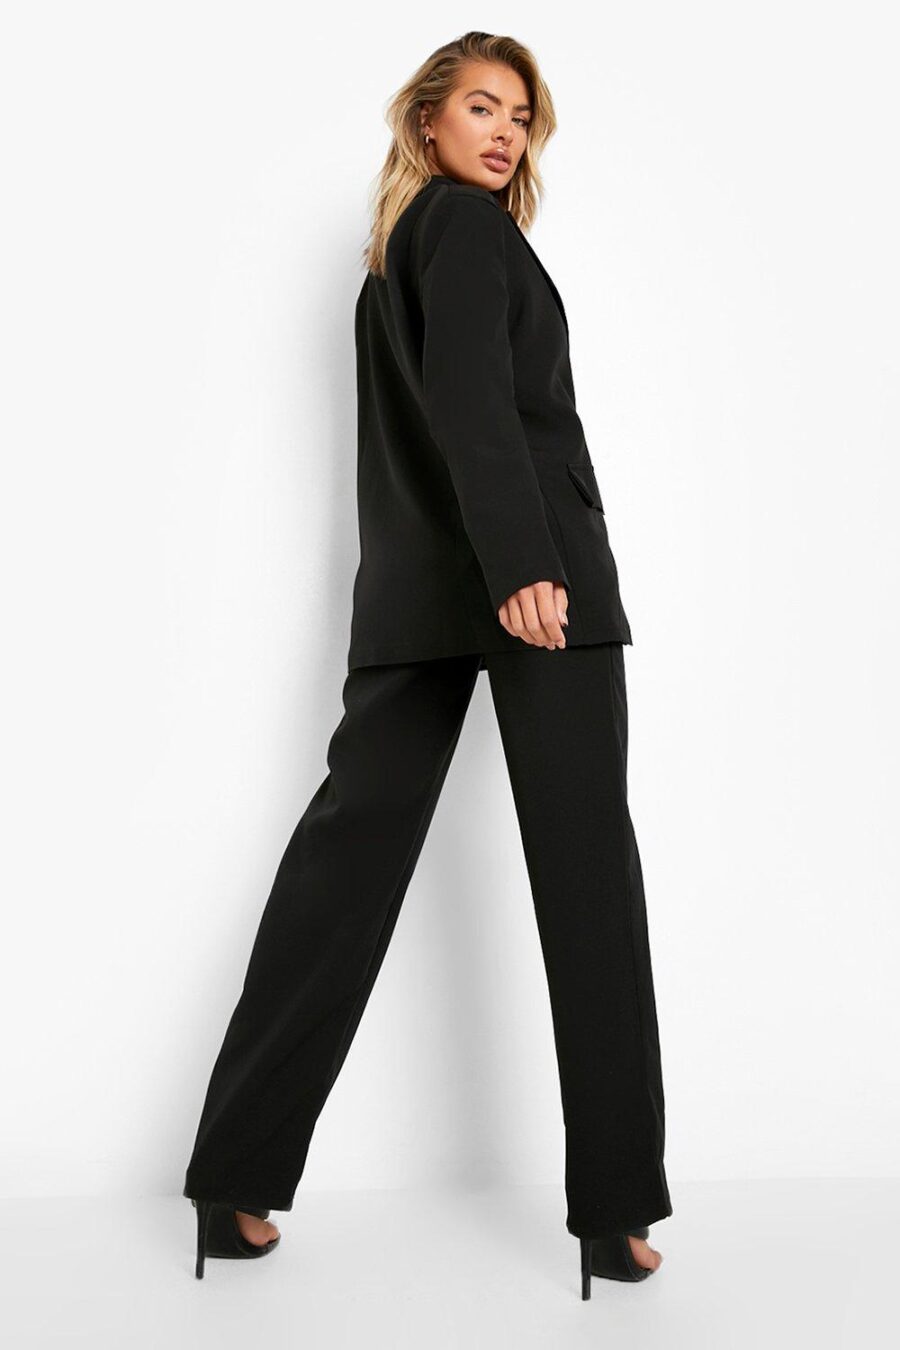 Boohoo-czarne-spodnie-materialowe-eleganckie-plus-size-46